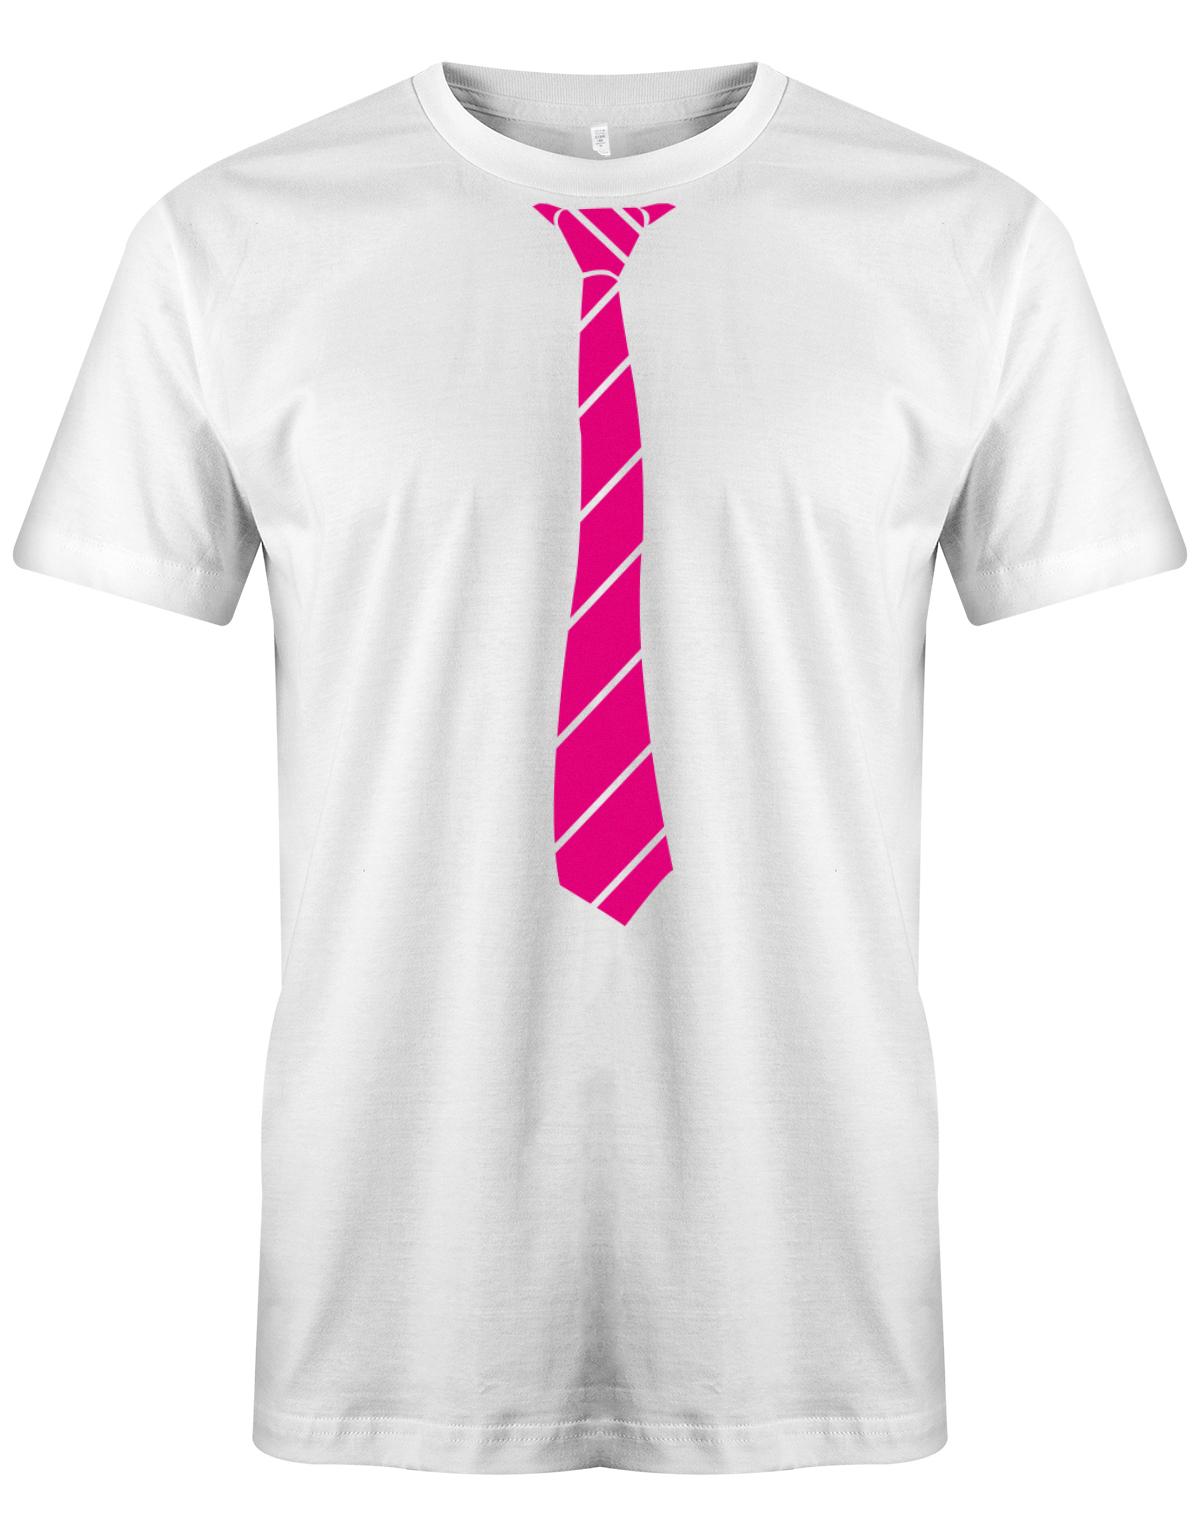 Krawatte-buisness-Herren-Shirt-JGA-Weiss-Pink